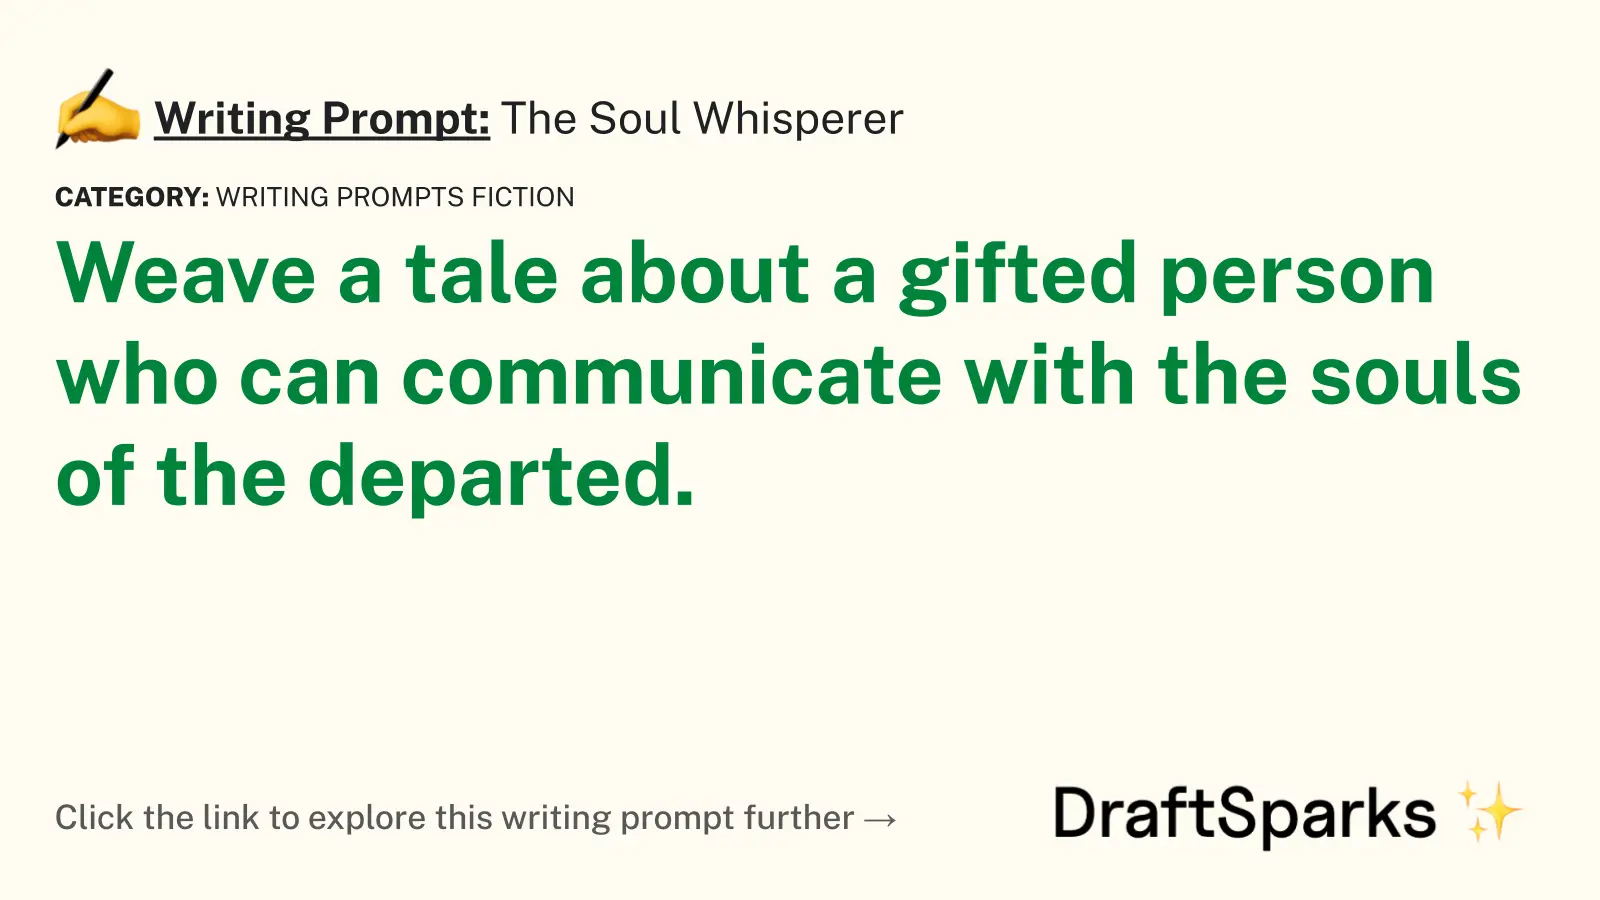 The Soul Whisperer